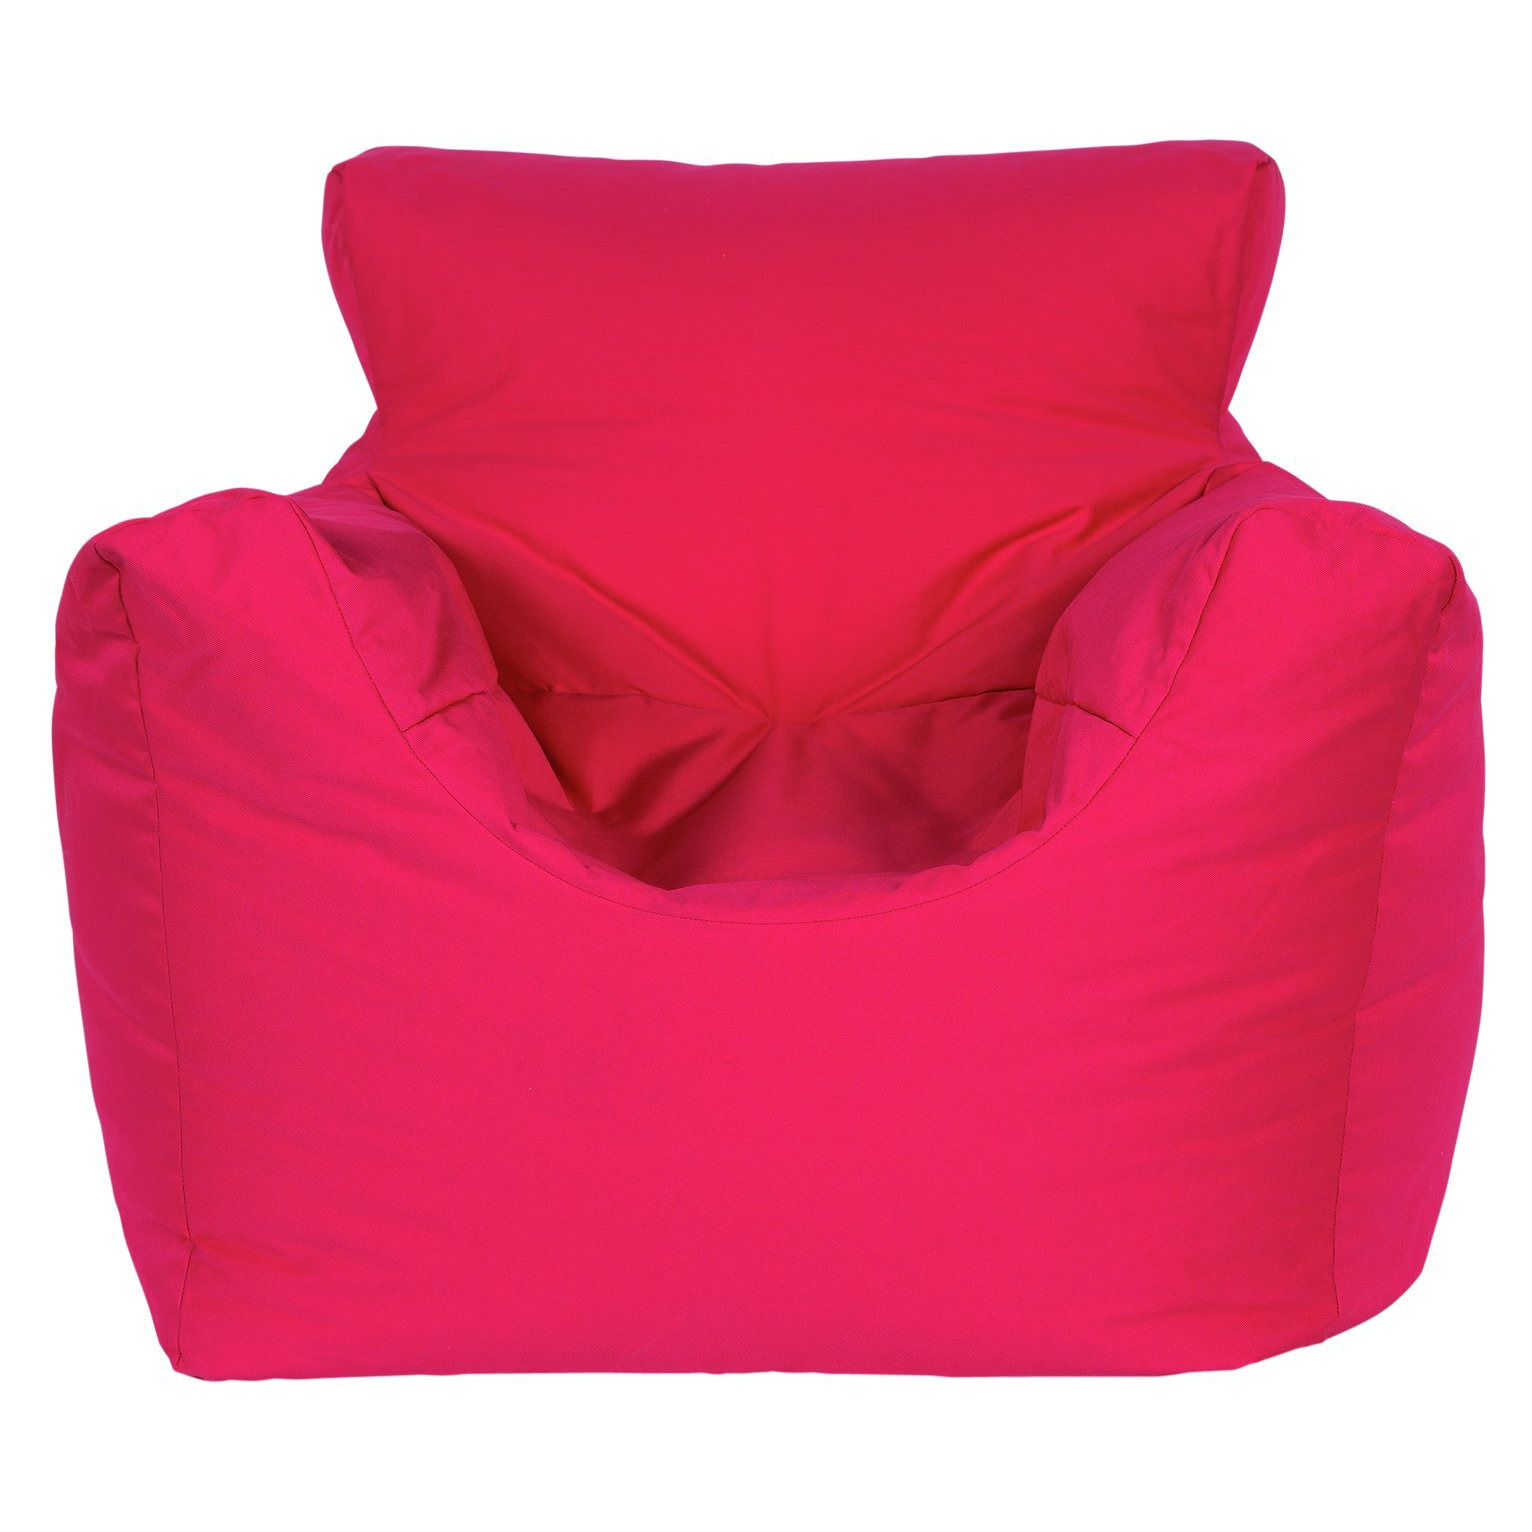 Buy rucomfy Indoor Outdoor Bean Bag - Pink | Bean bags | Argos